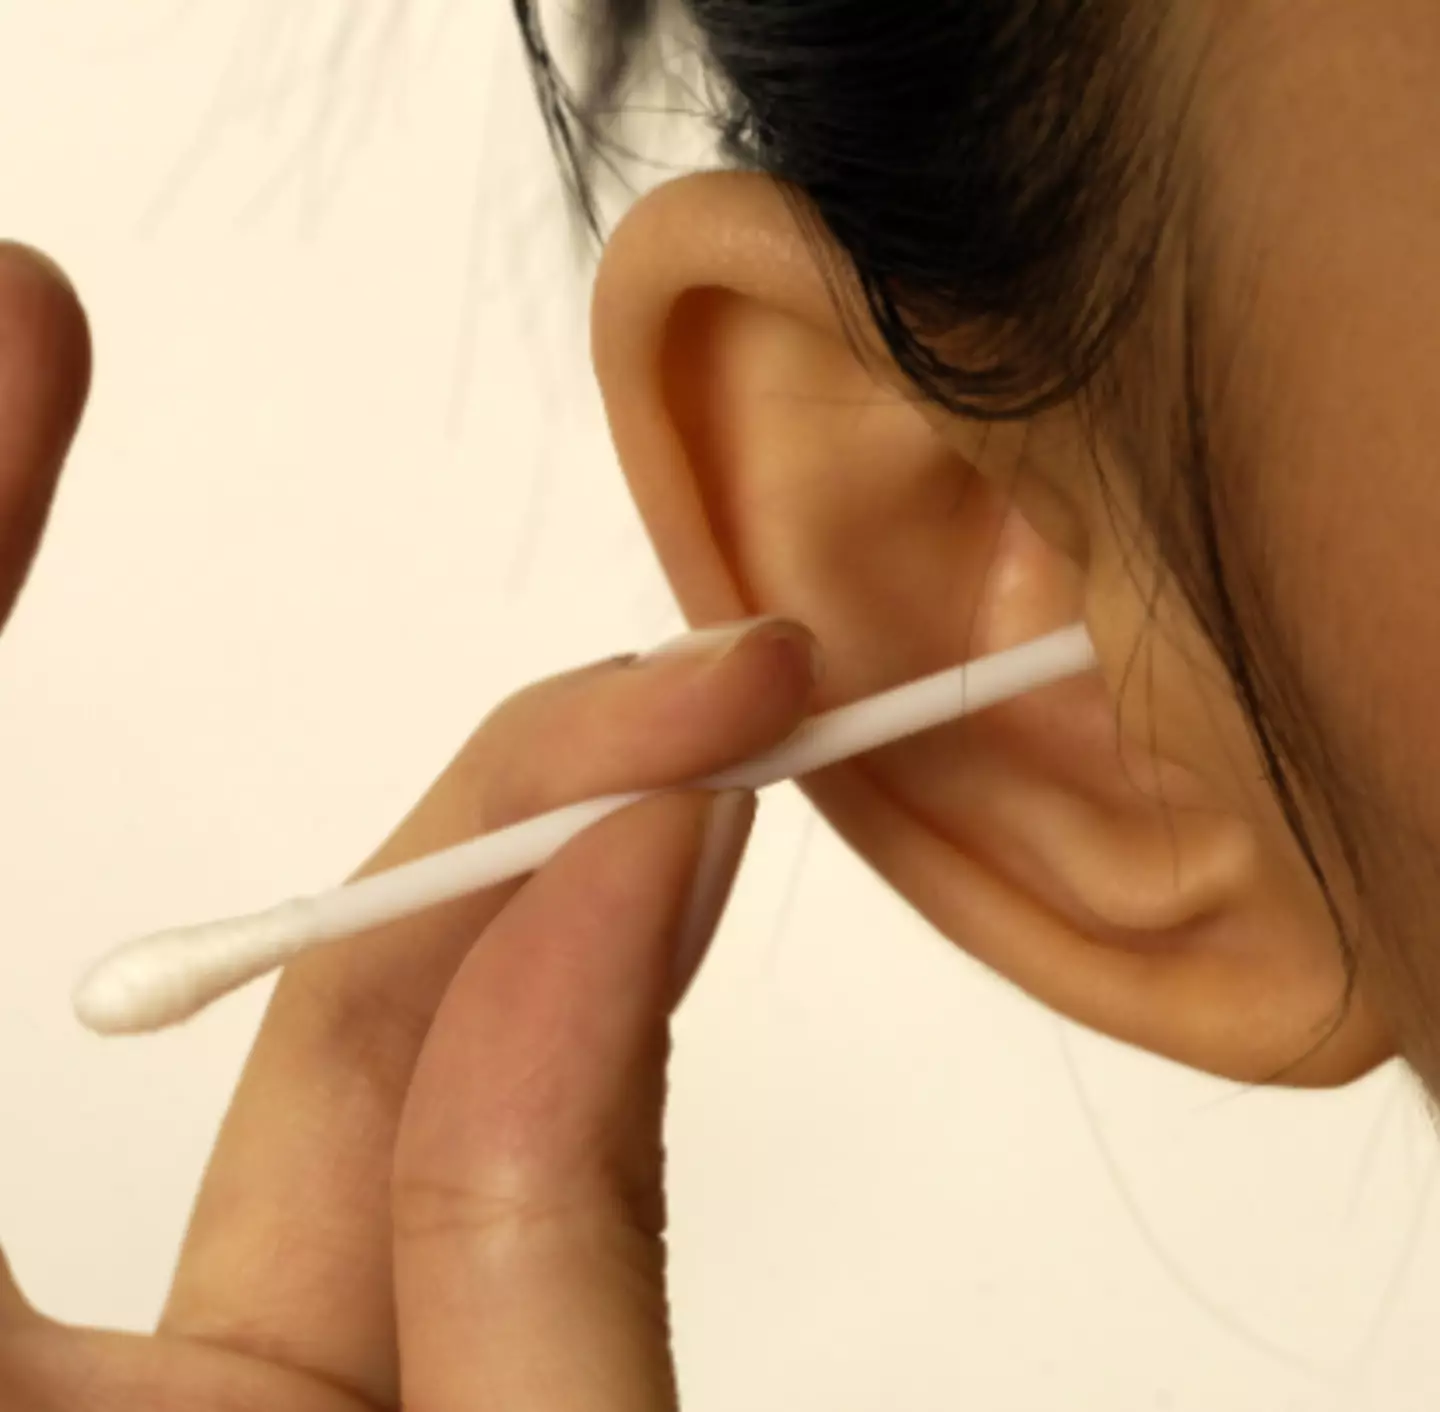 Если уши начинают протекать из-за ушной серы, следует обратиться к врачу.